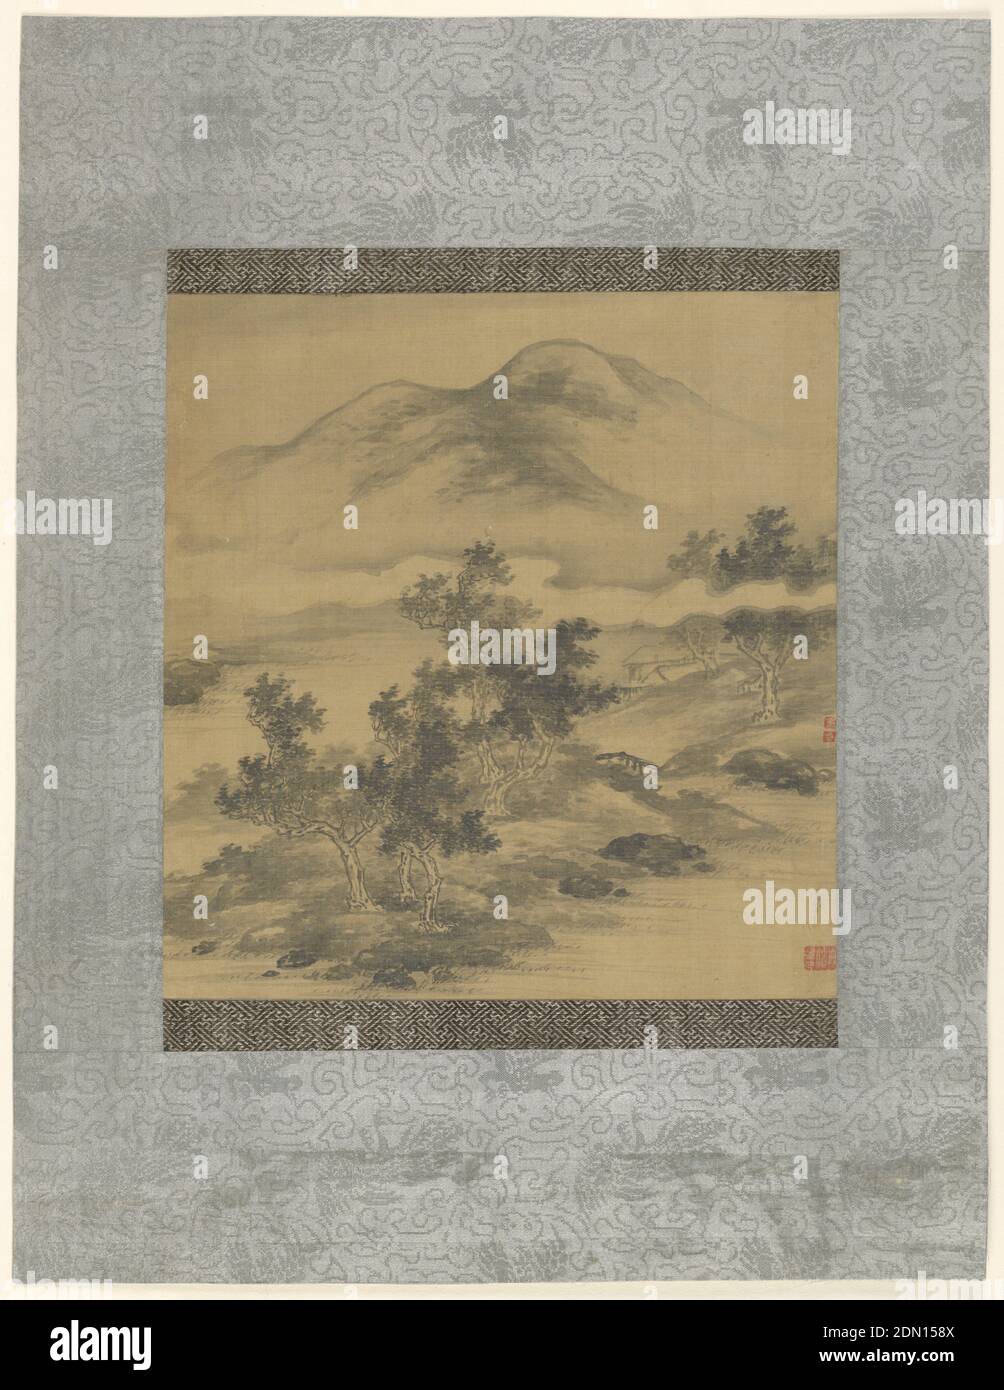 Paisaje de montaña, pincel y tinta negra en seda, montado, y con una alfombra de brocado gris, Europa y Japón, siglo 17, teatro, dibujo Foto de stock